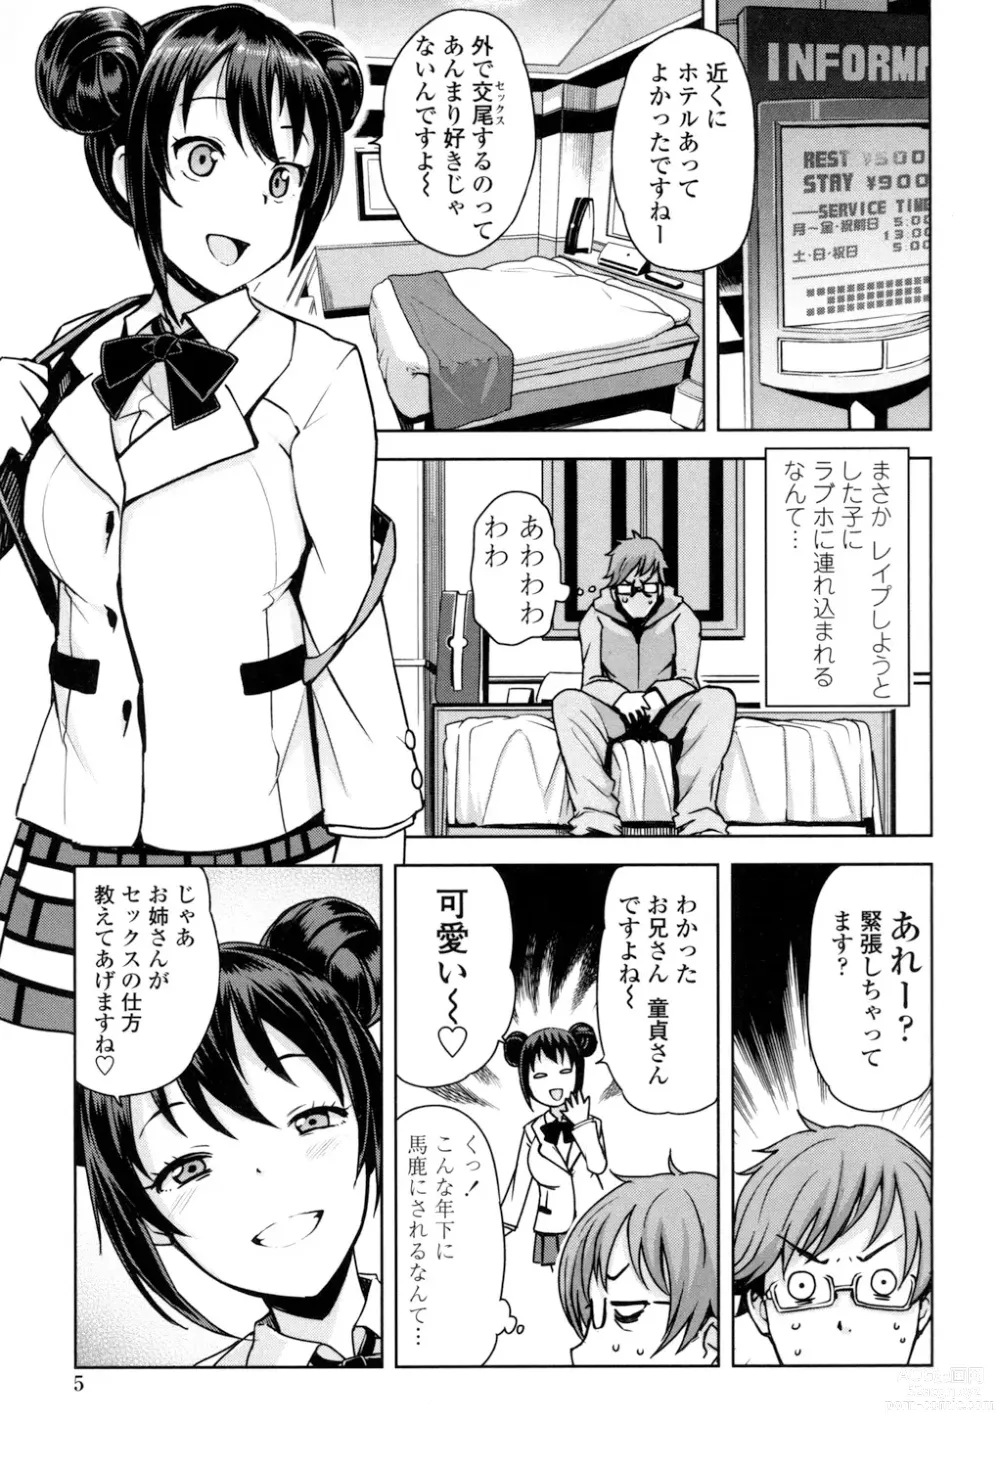 Page 6 of manga Doutei Danshi Kousei Iinkai - Virginity Boy Rebirth Committee